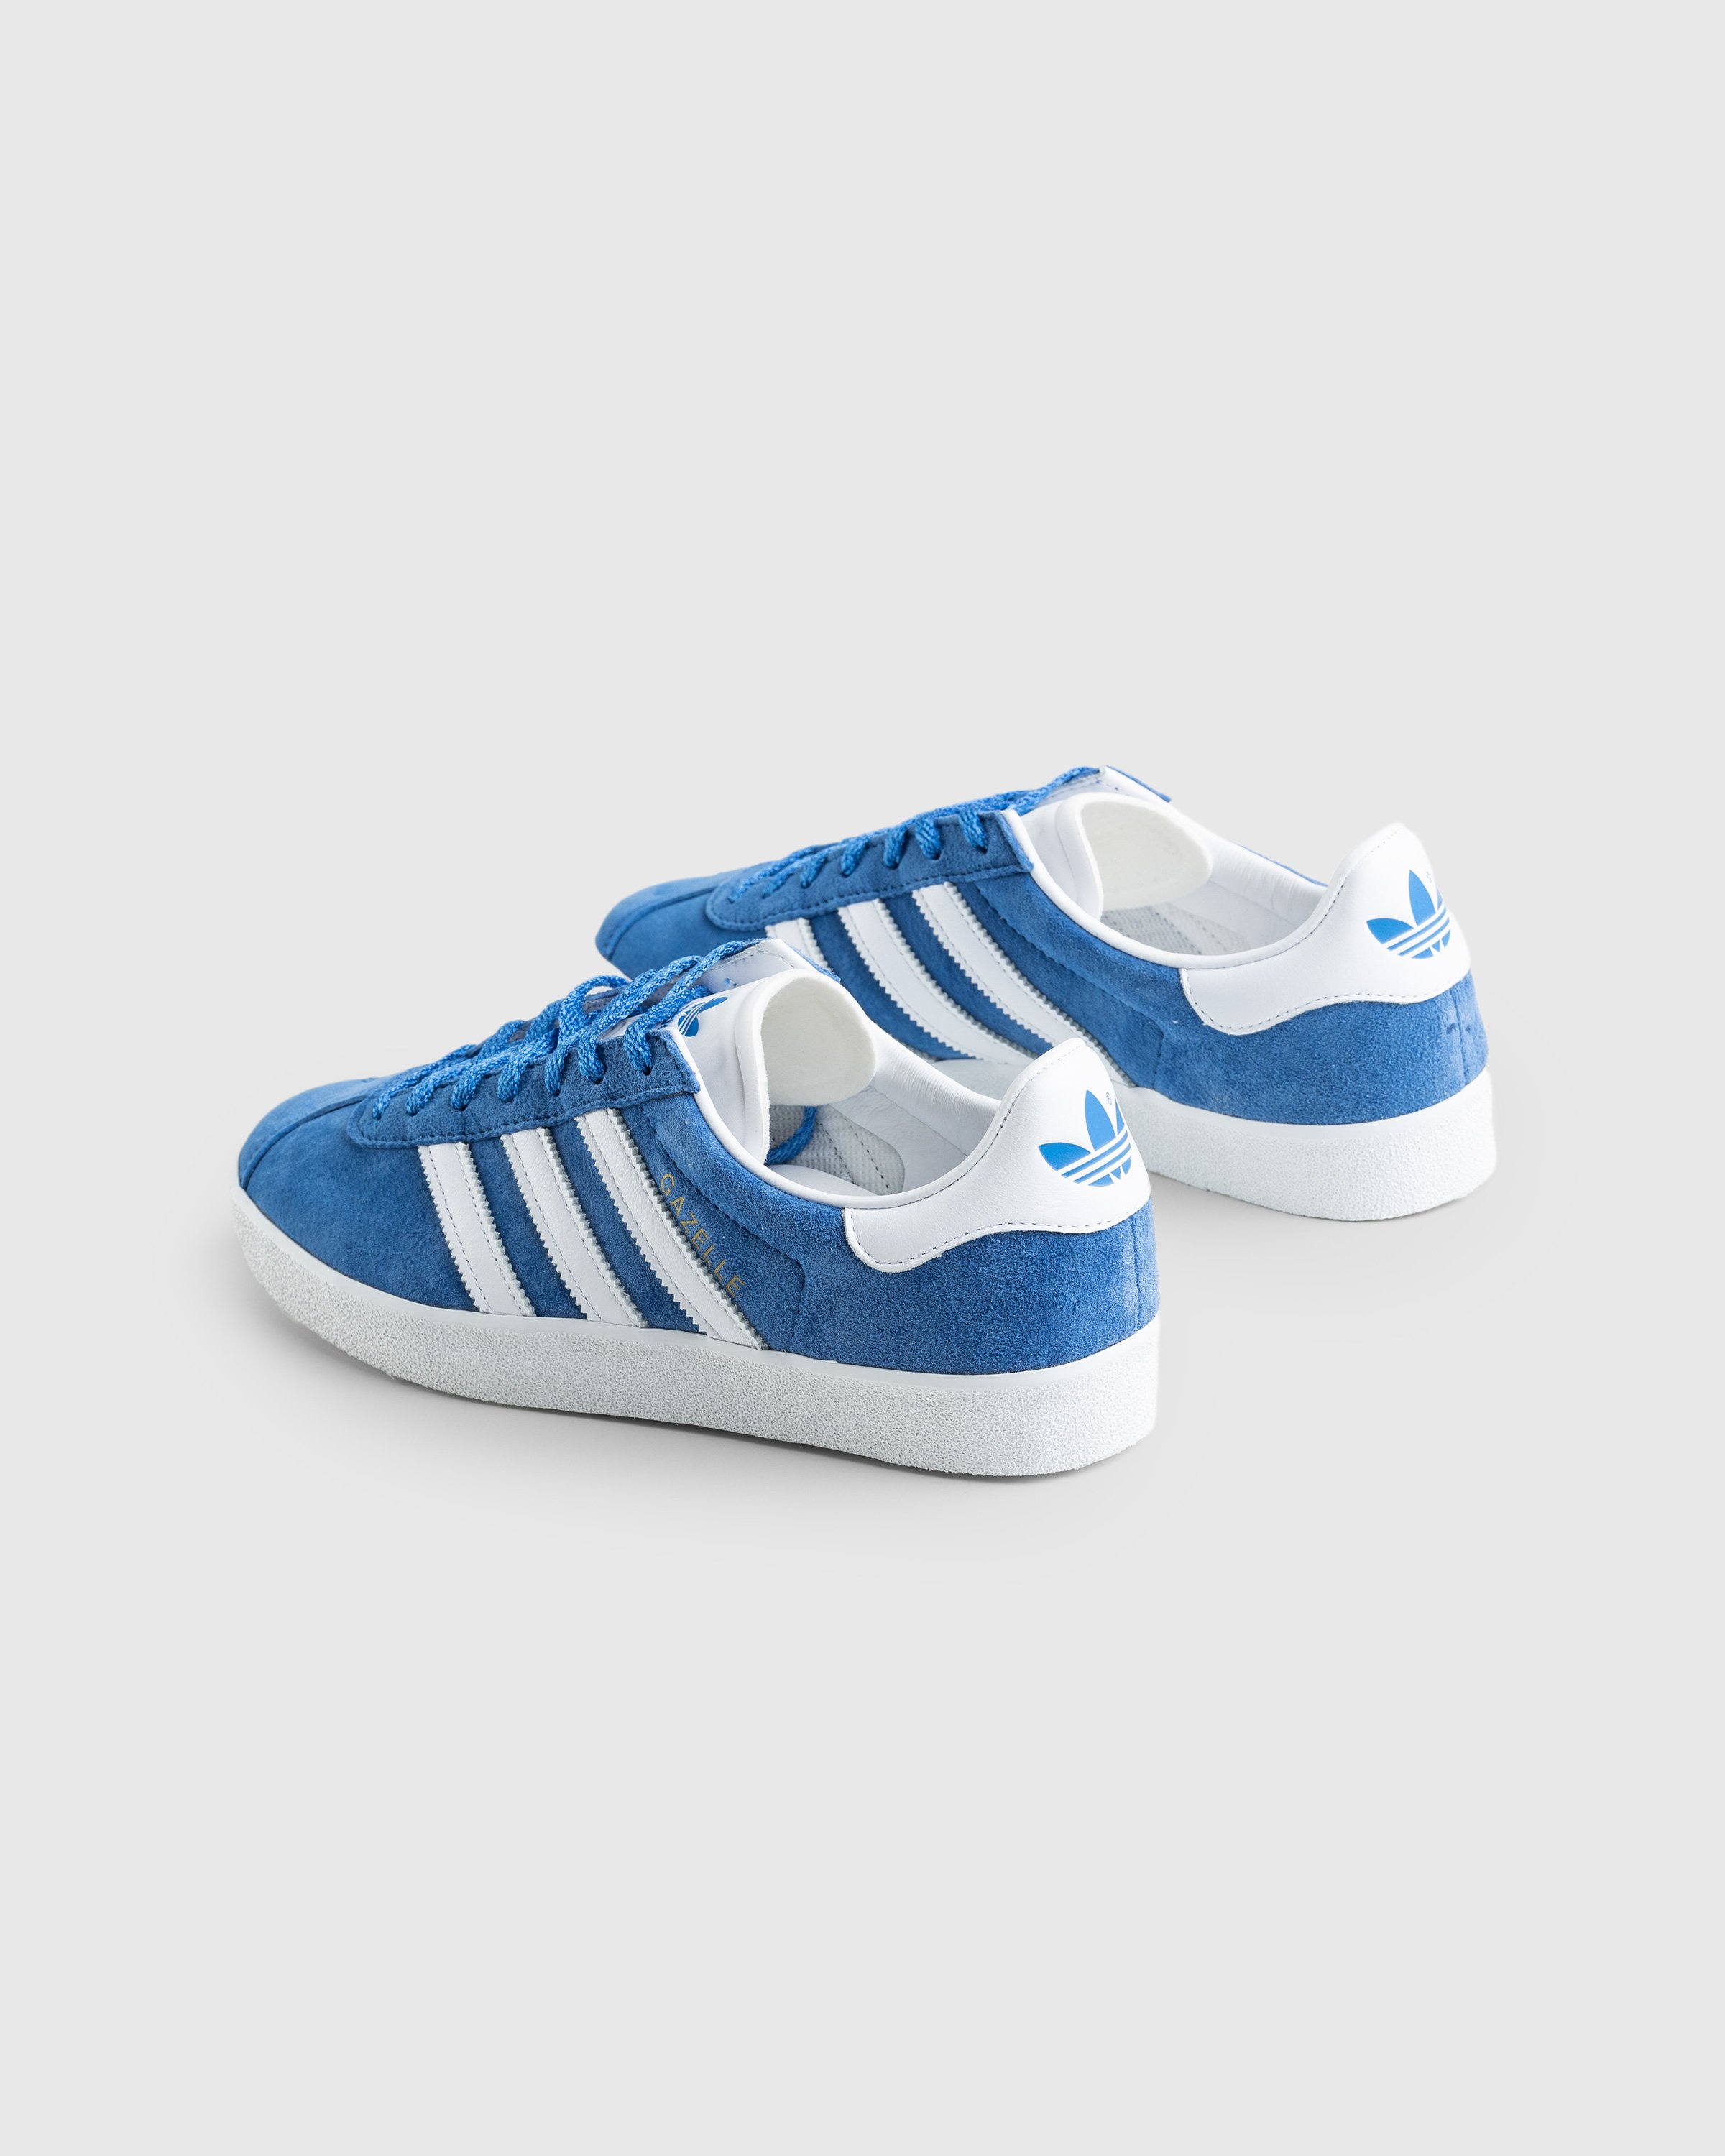 Adidas - Gazelle 85 Blue - Footwear - Blue - Image 4